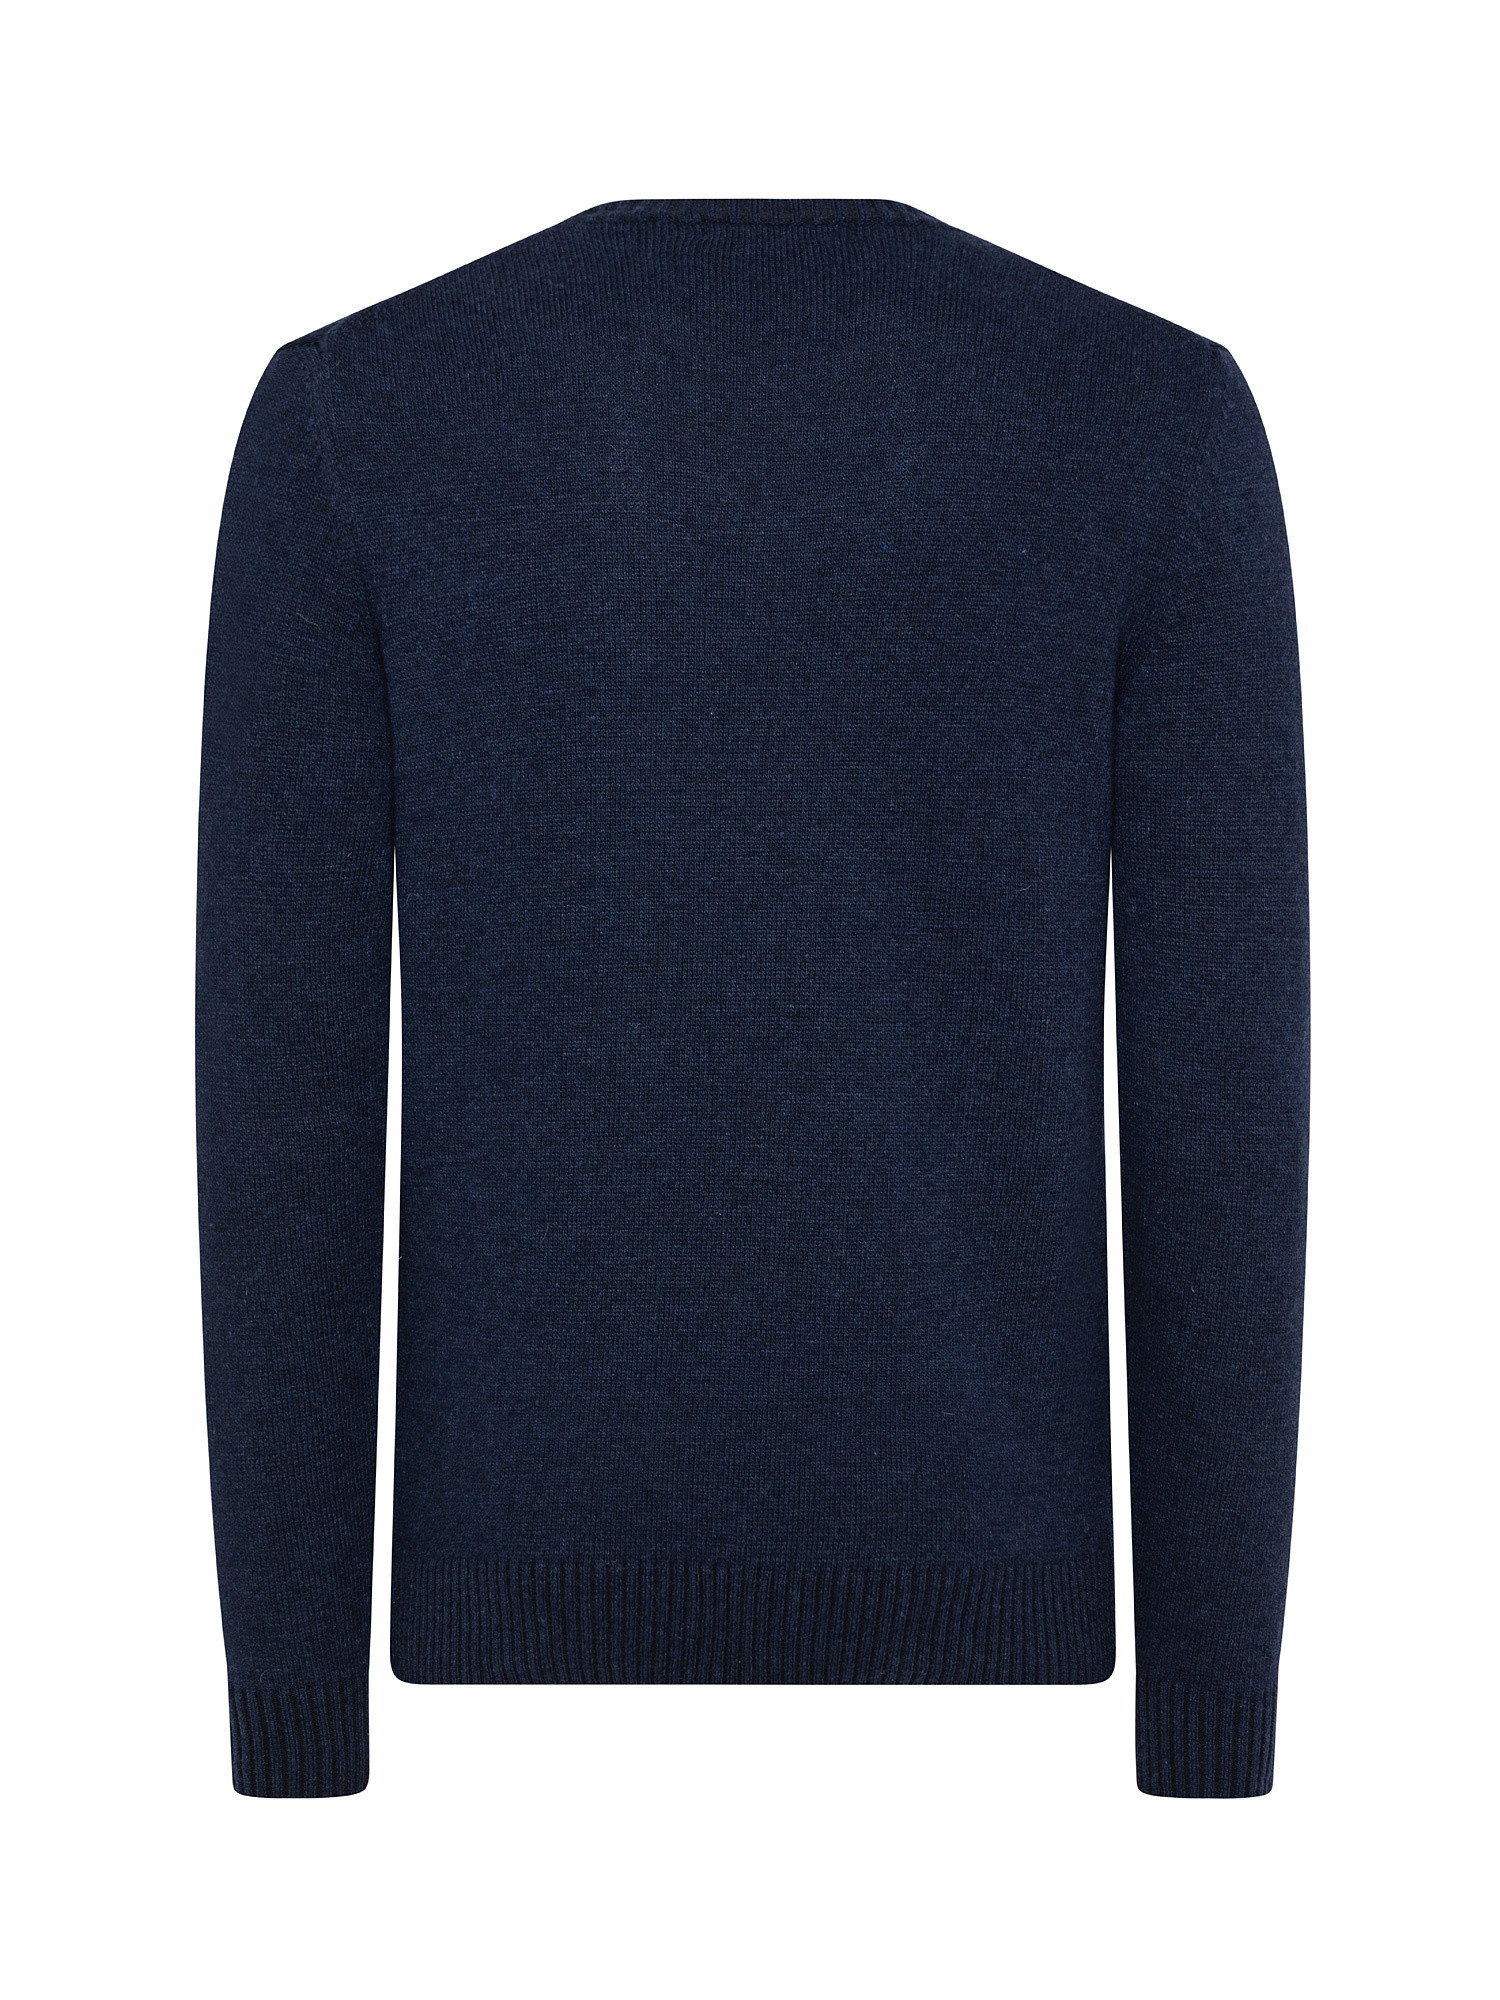 Crewneck pullover, Blue, large image number 1